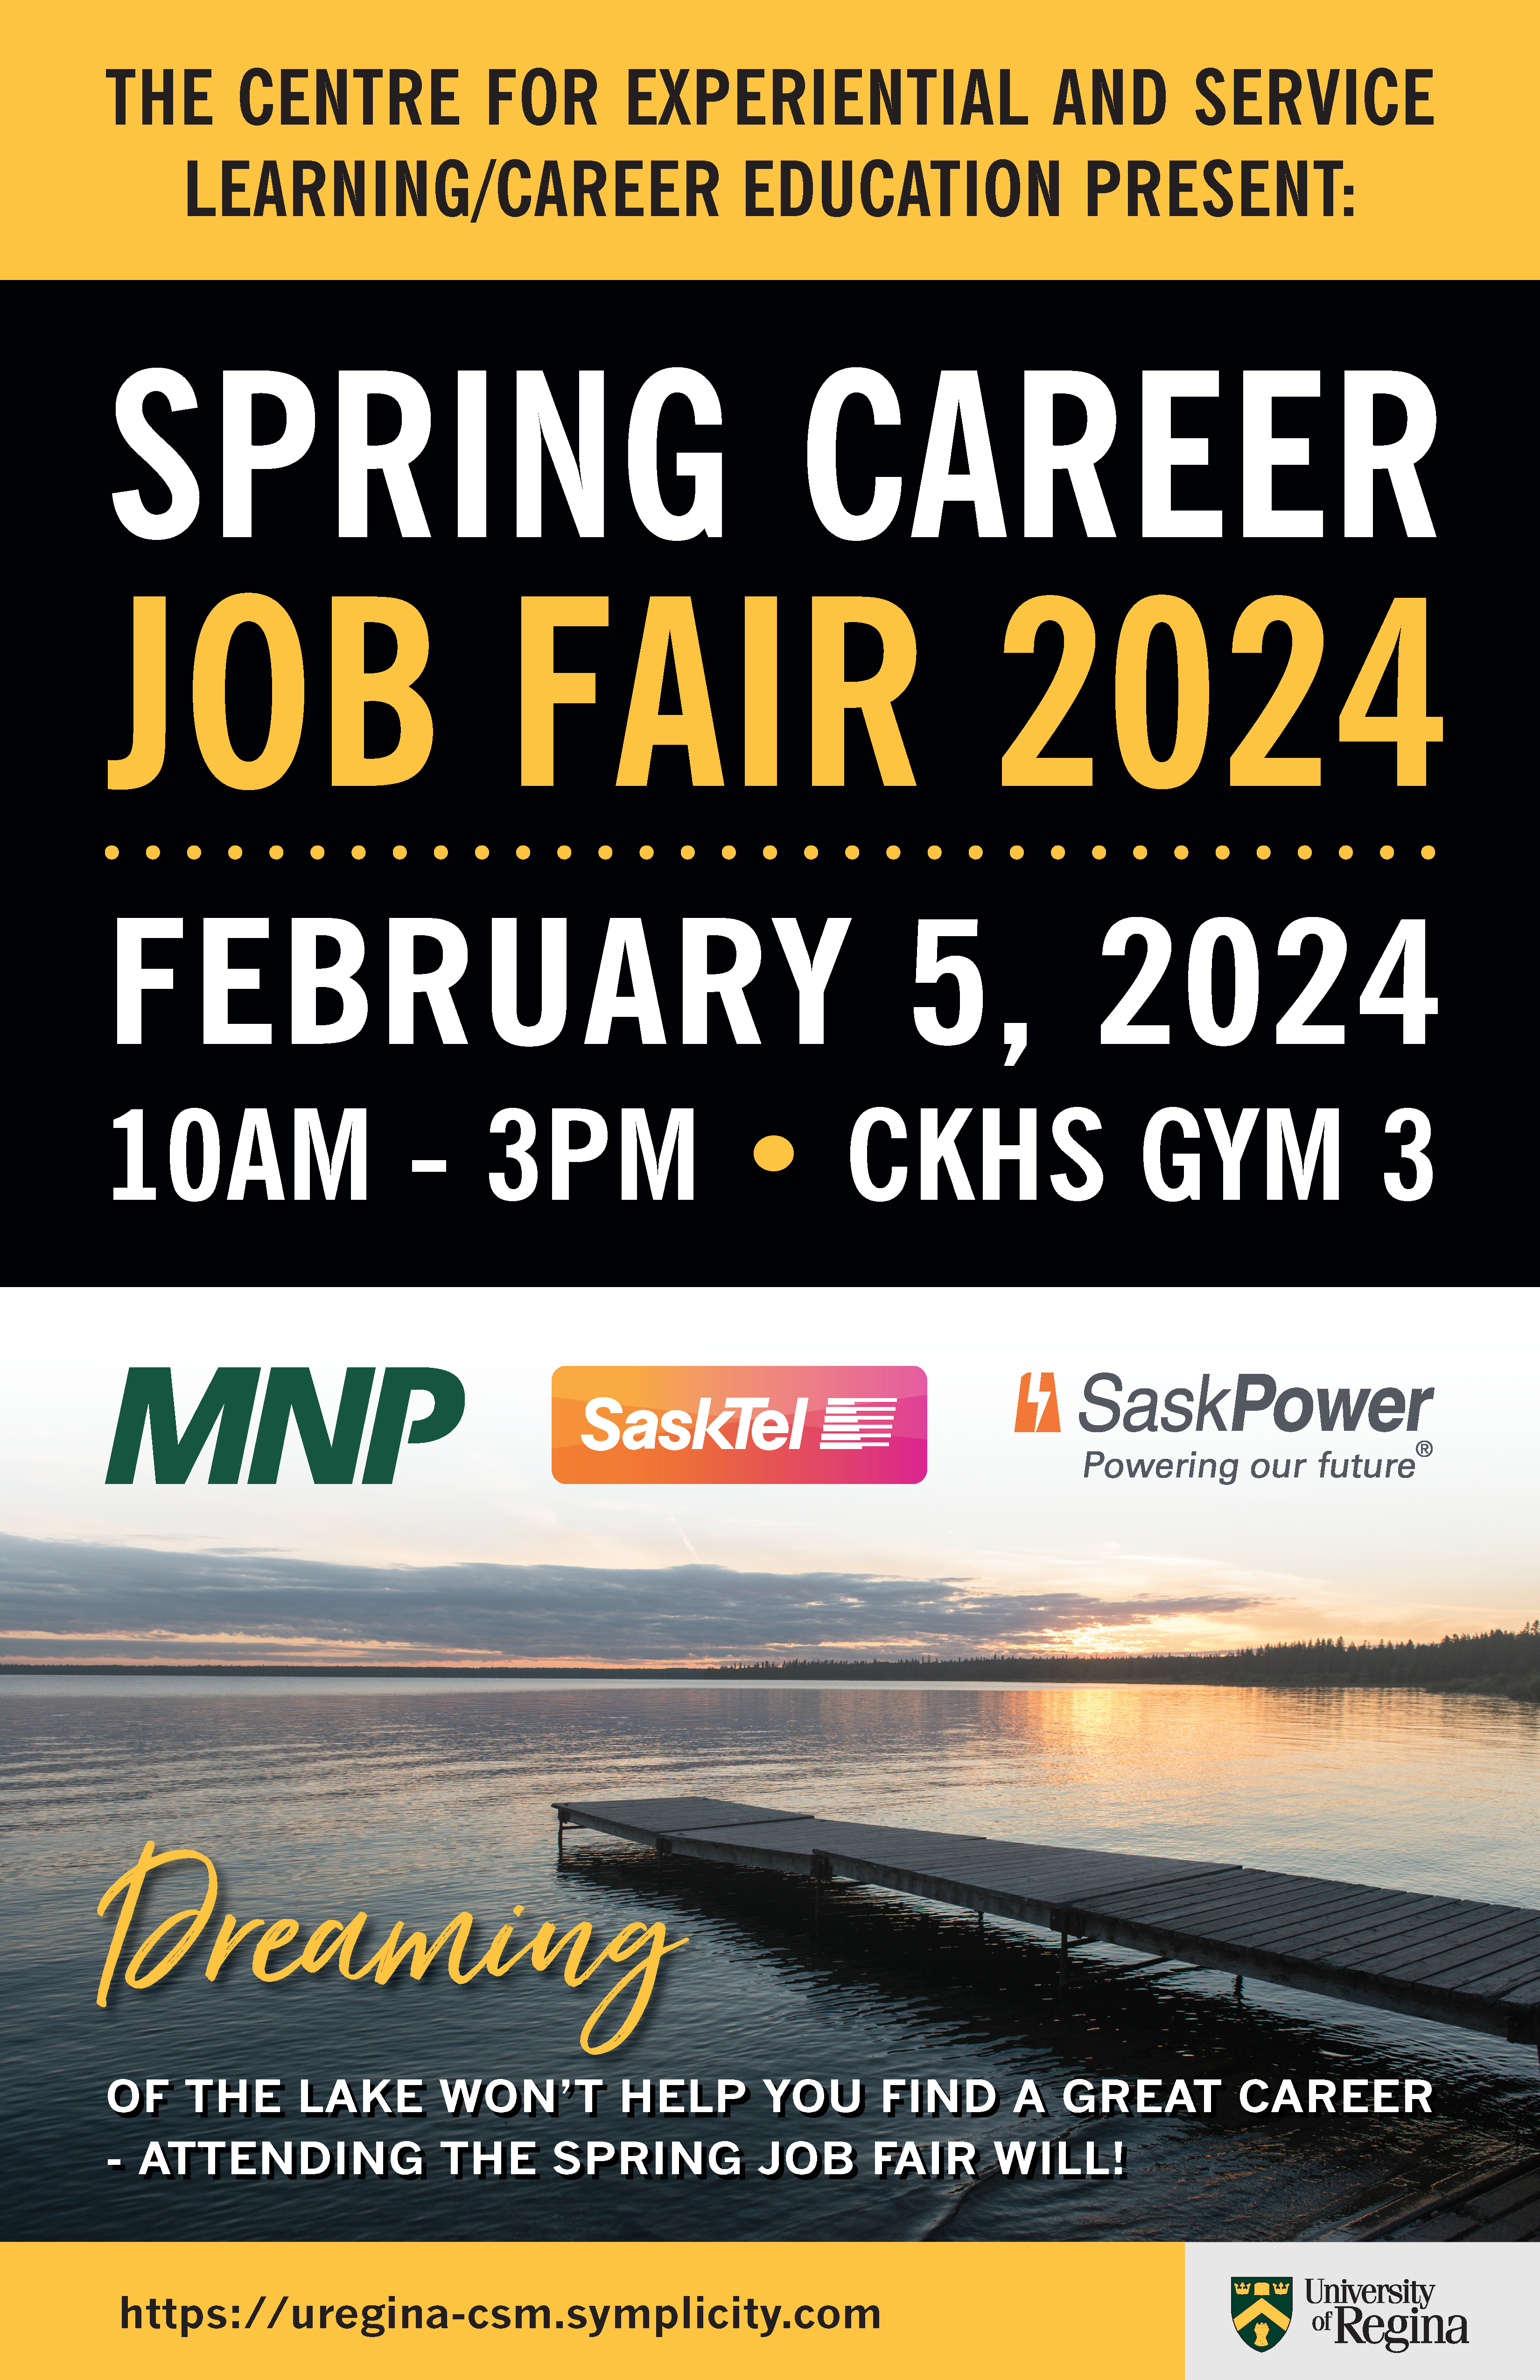 spring-career-job-fair-2024-11-x-17-poster.png